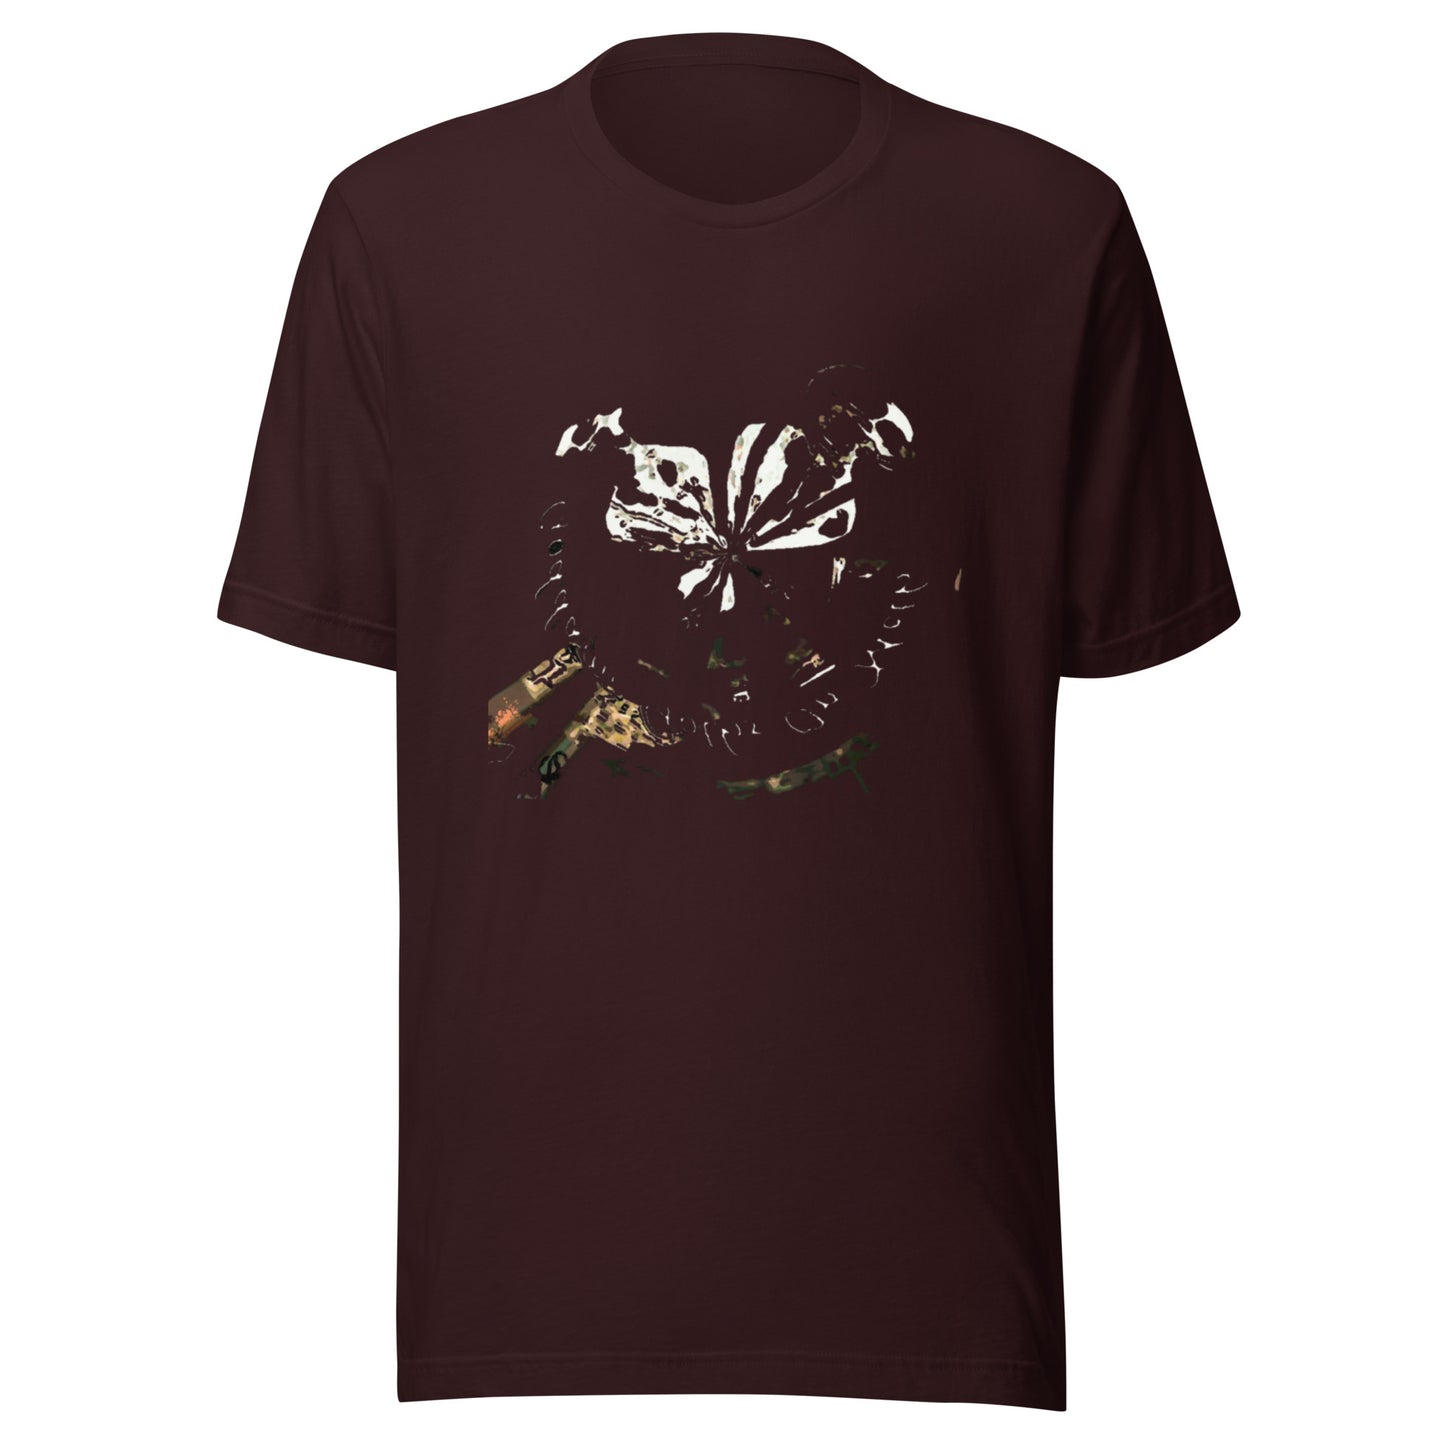 SWIRLED EMBLEMS - Unisex t-shirt